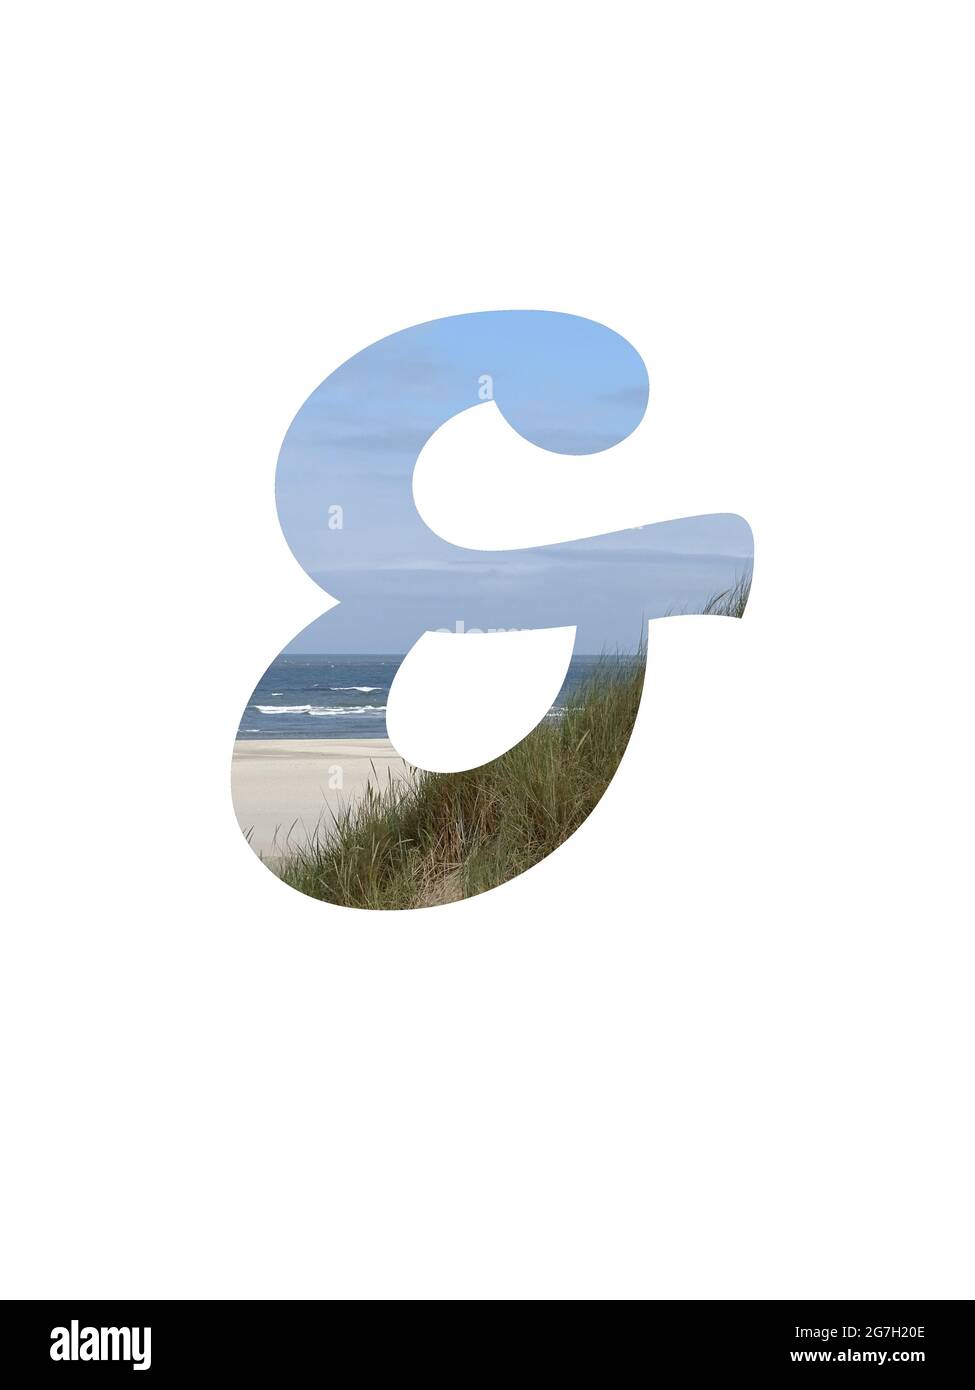 E segno dell'alfabeto fatto con un paesaggio con spiaggia, mare, cielo blu e dune, isolato su uno sfondo bianco Foto Stock